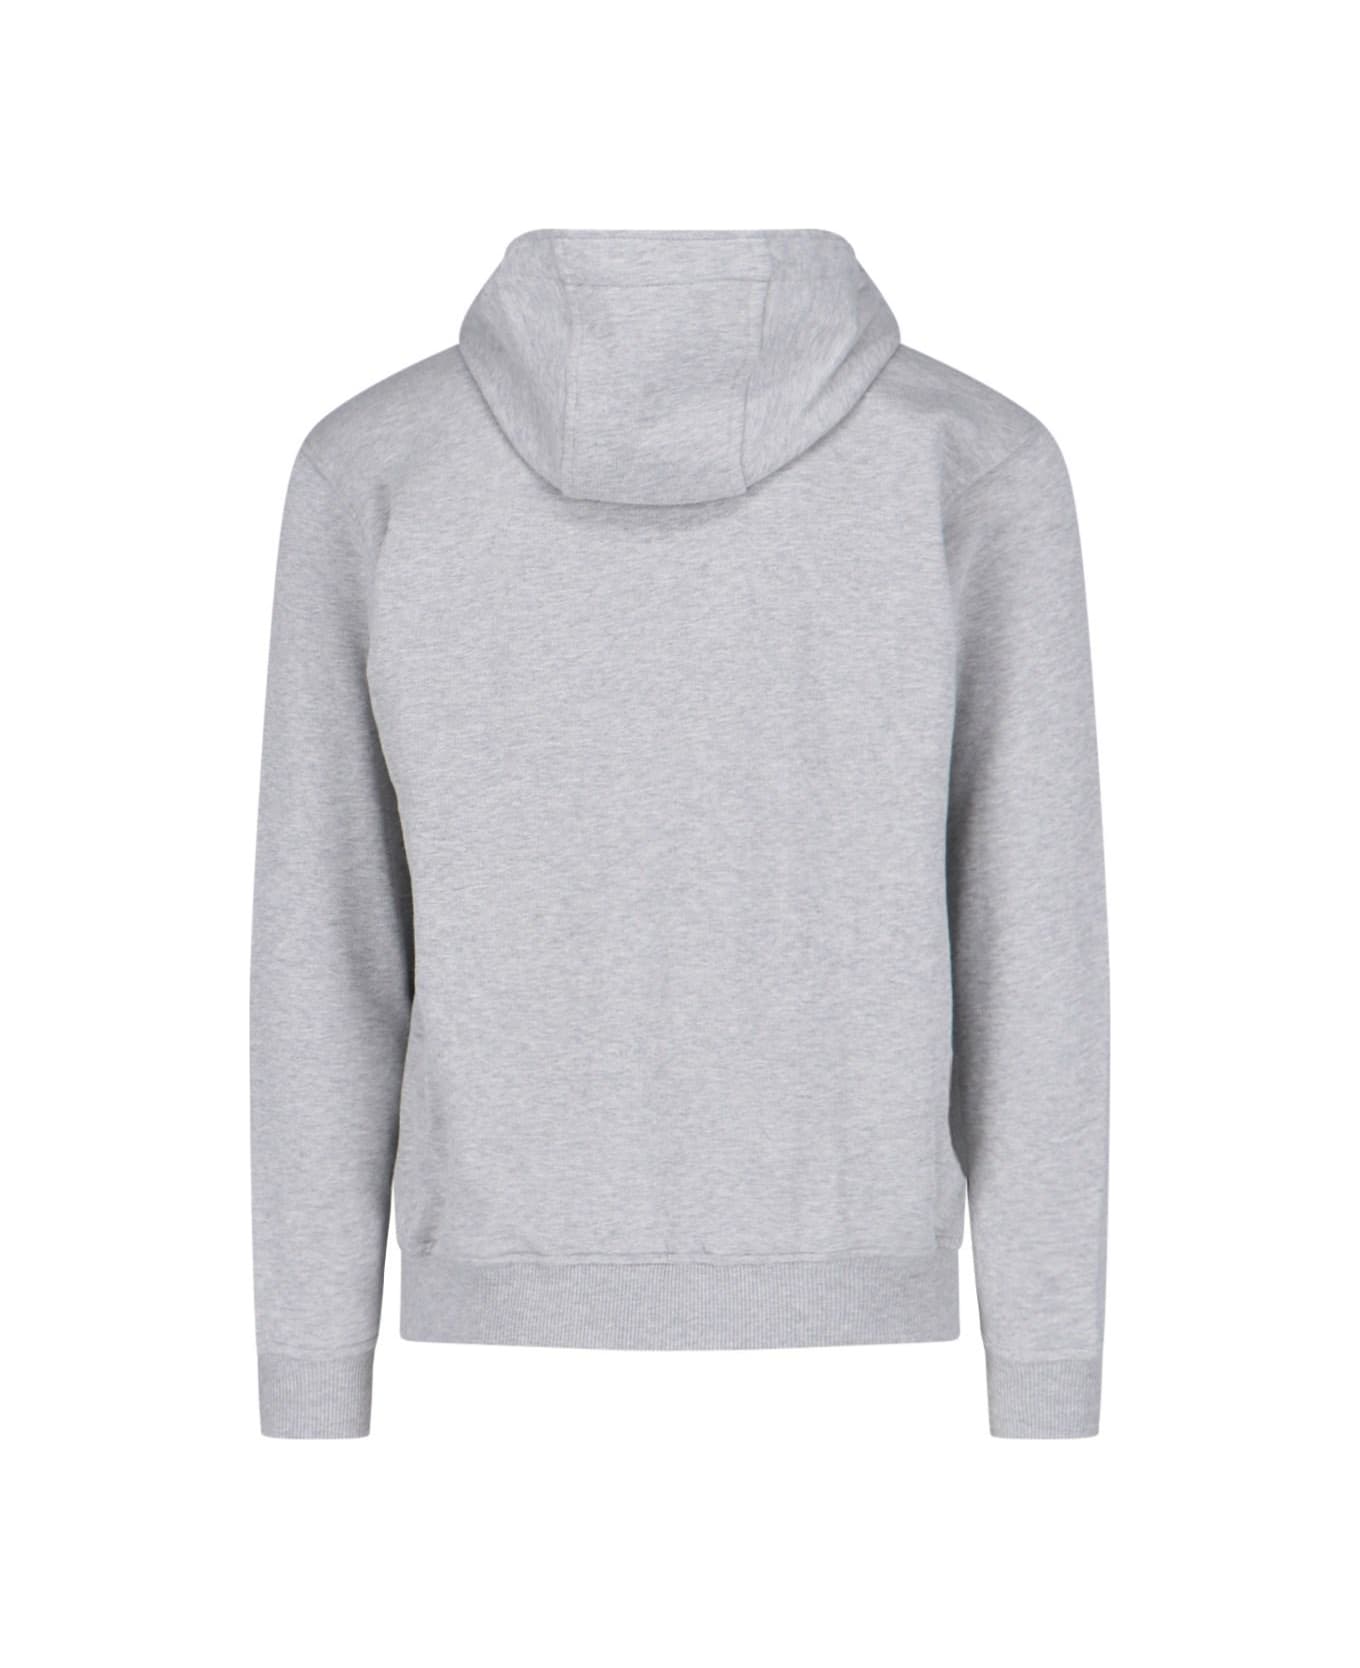 Comme des Garçons Shirt Printed Zip Sweatshirt - Top Grey